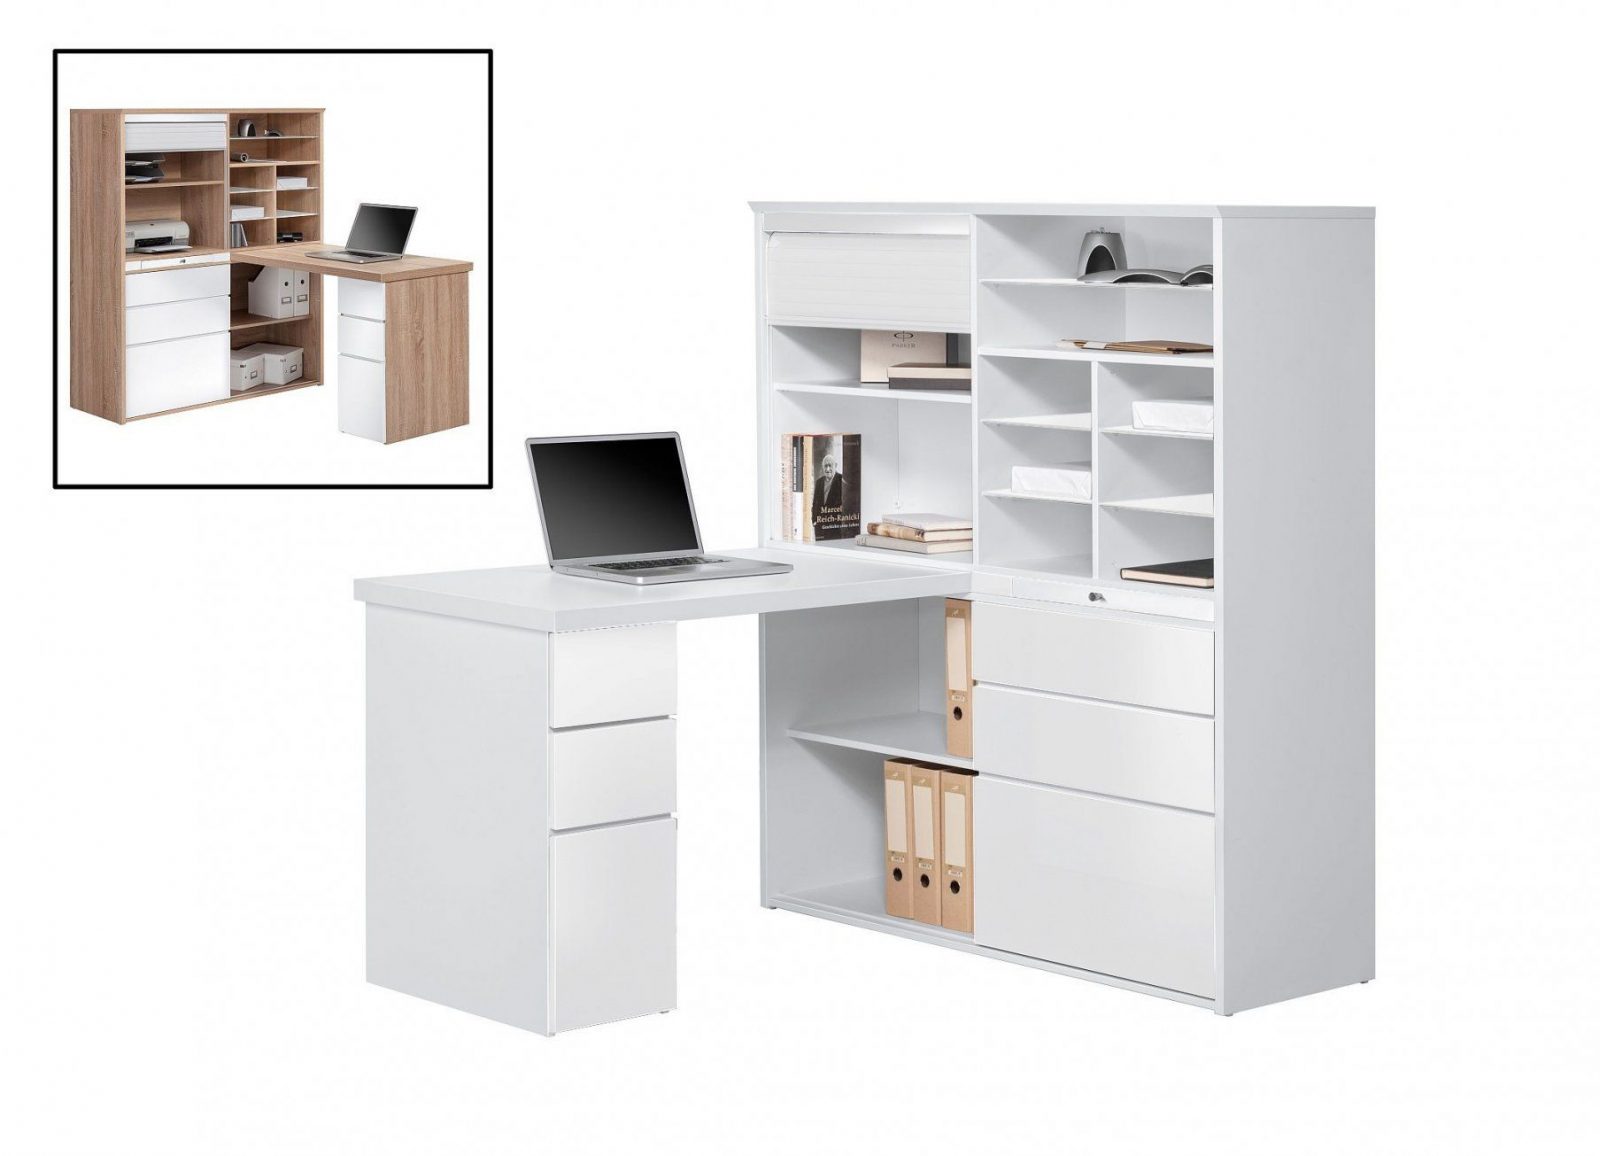 Minioffice  Büroschrank Mit Integriertem Schreibtisch Modmj128 Icy von Schrank Mit Integriertem Schreibtisch Bild